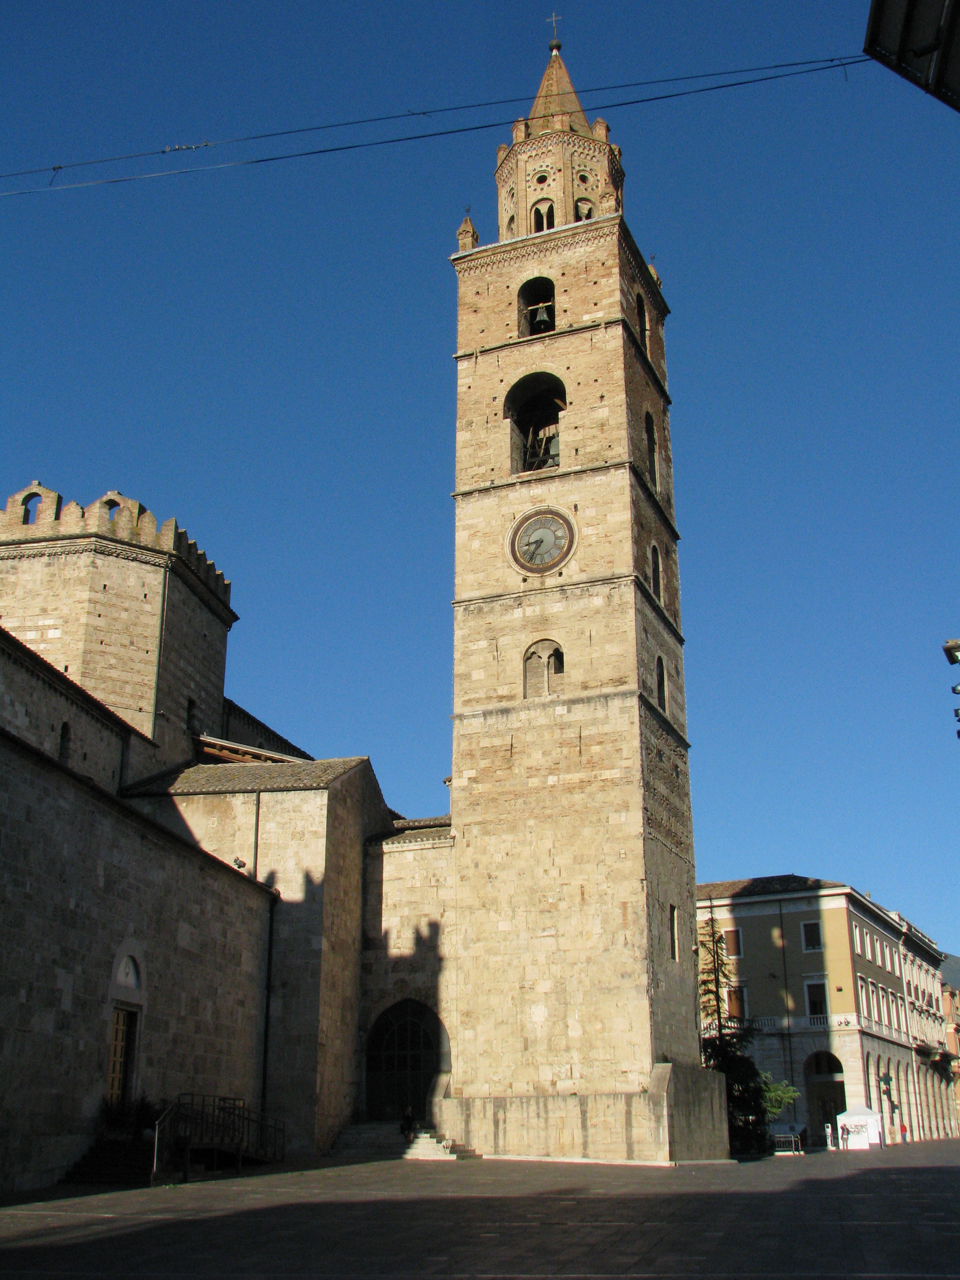 campanile del duomo di Teramo (campanile) - Teramo (TE) 